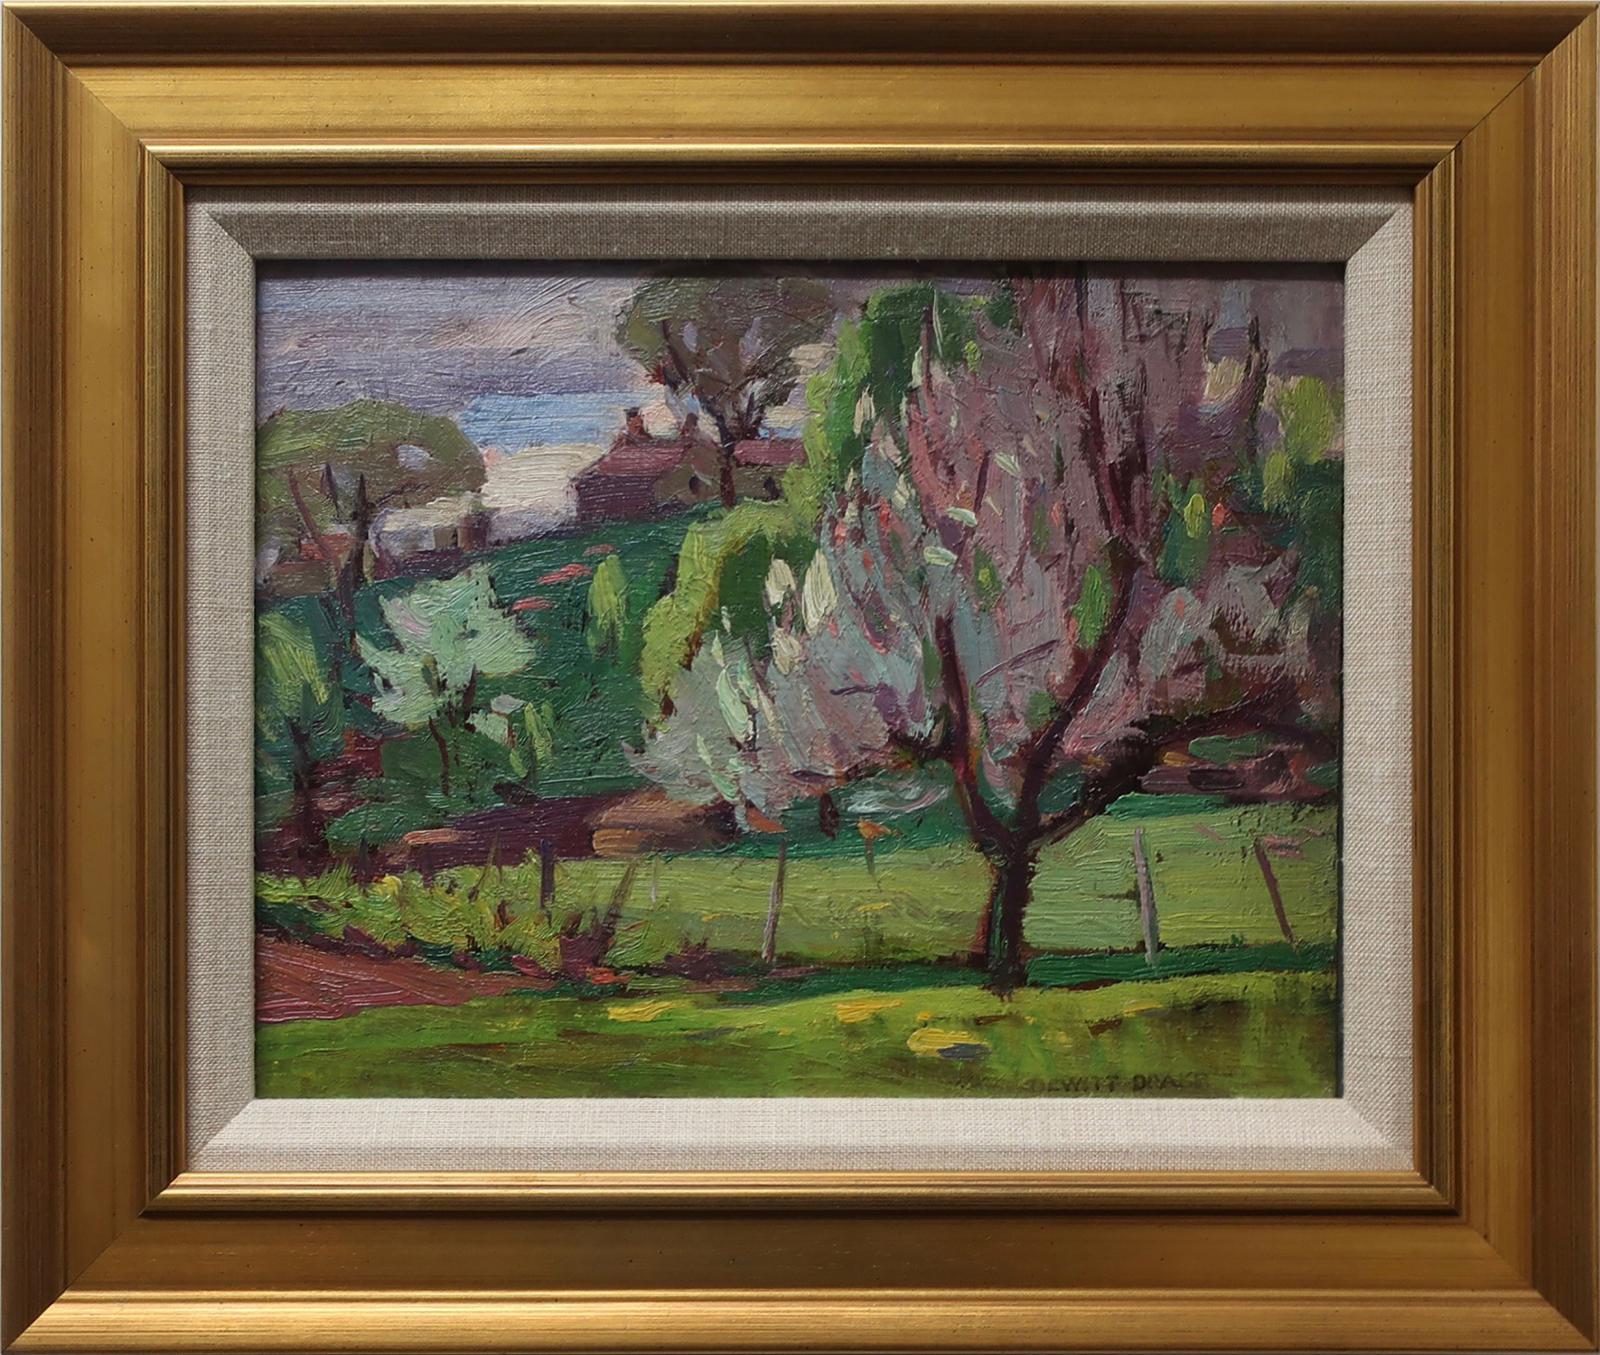 Dewitt Drake (1884-1979) - Flowering Fruit Trees